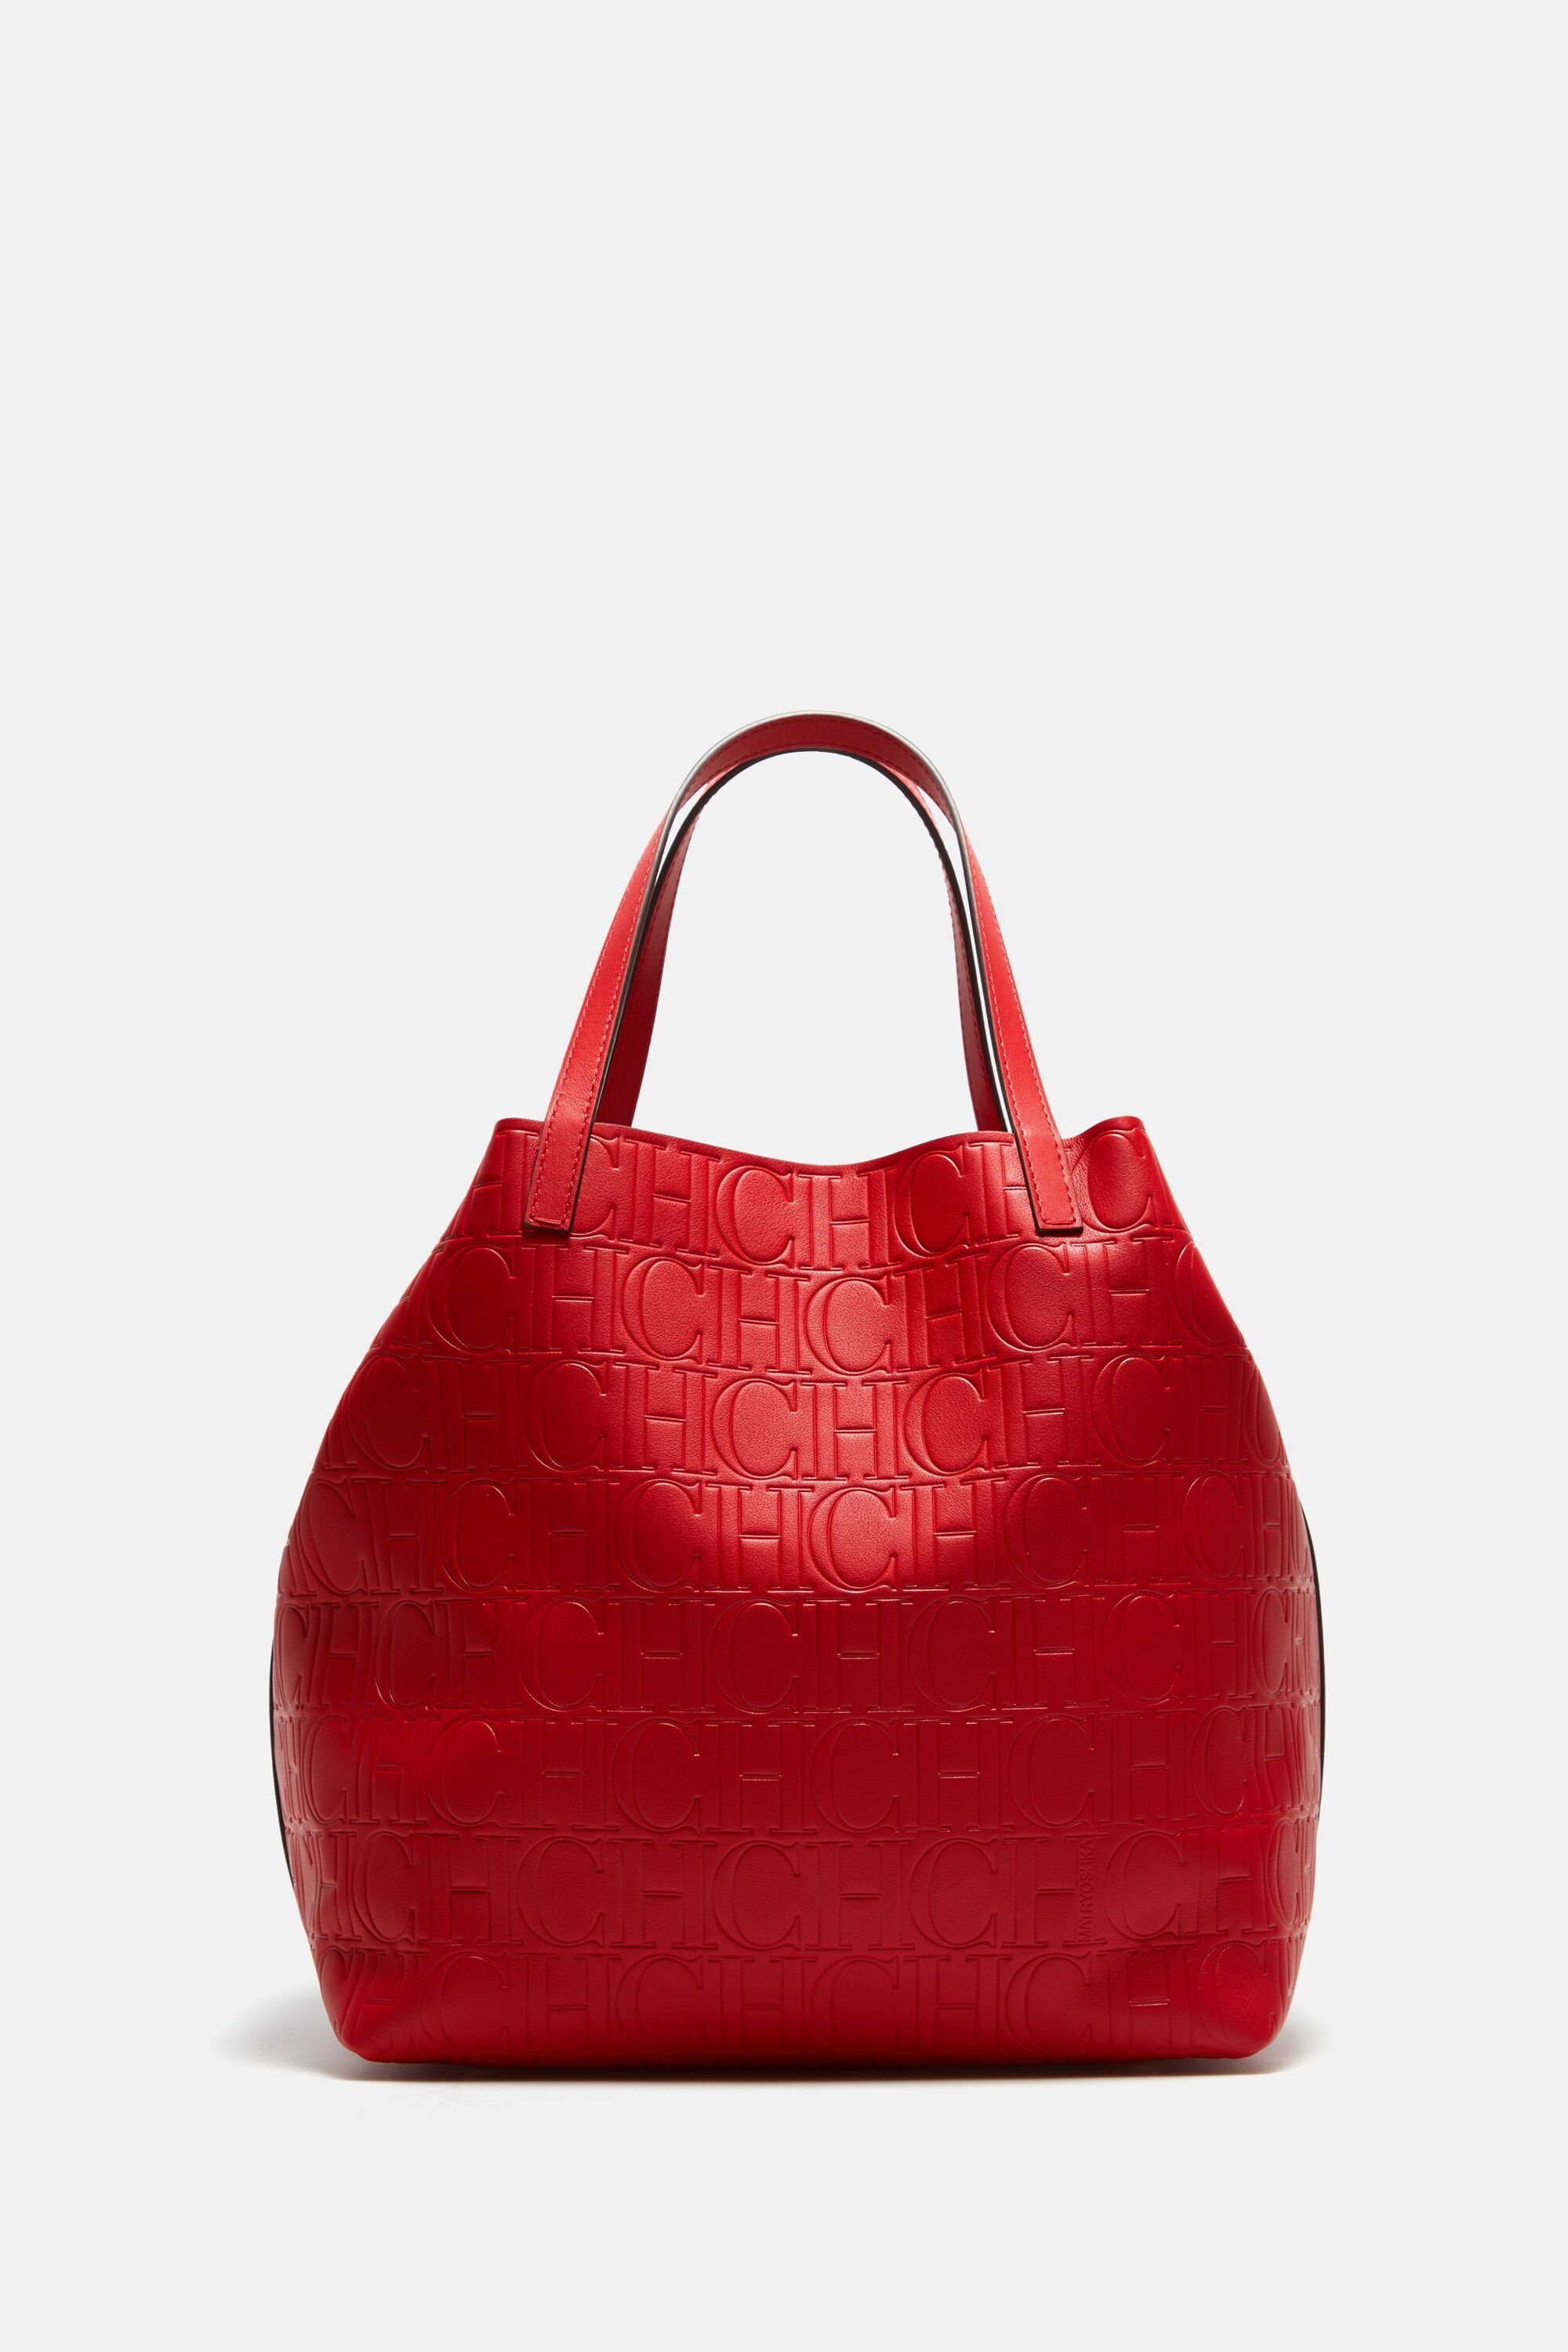 Brown Carolina Herrera Shopping Bag Red Stripe